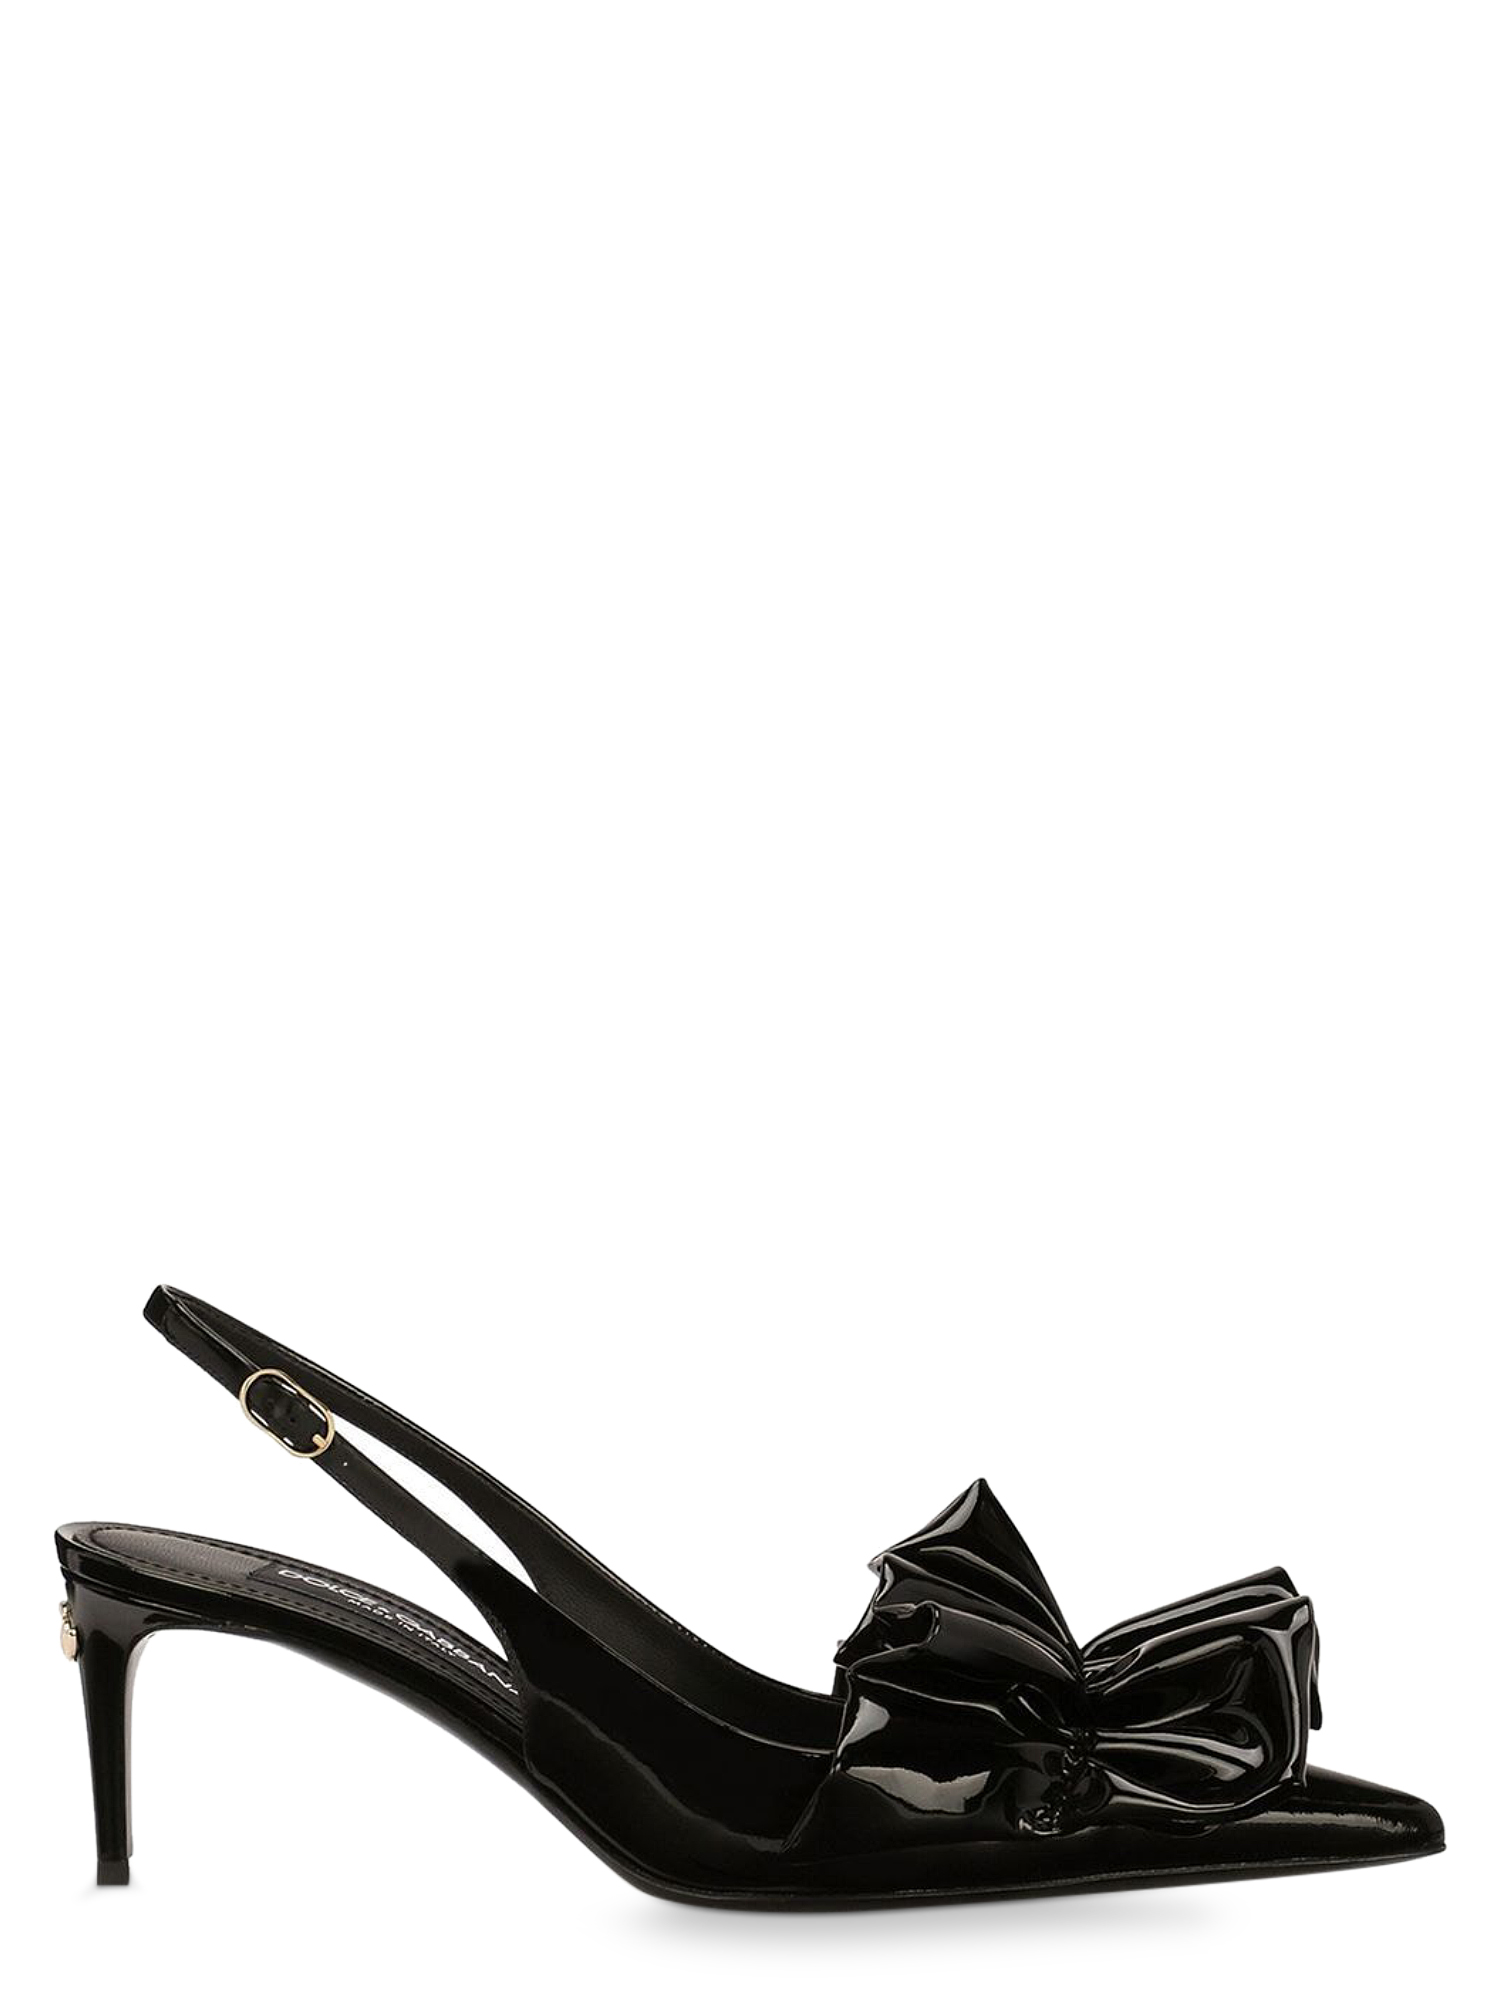 Escarpins Pour Femme - Dolce & Gabbana - En Leather Black - Taille: IT 37 - EU 37